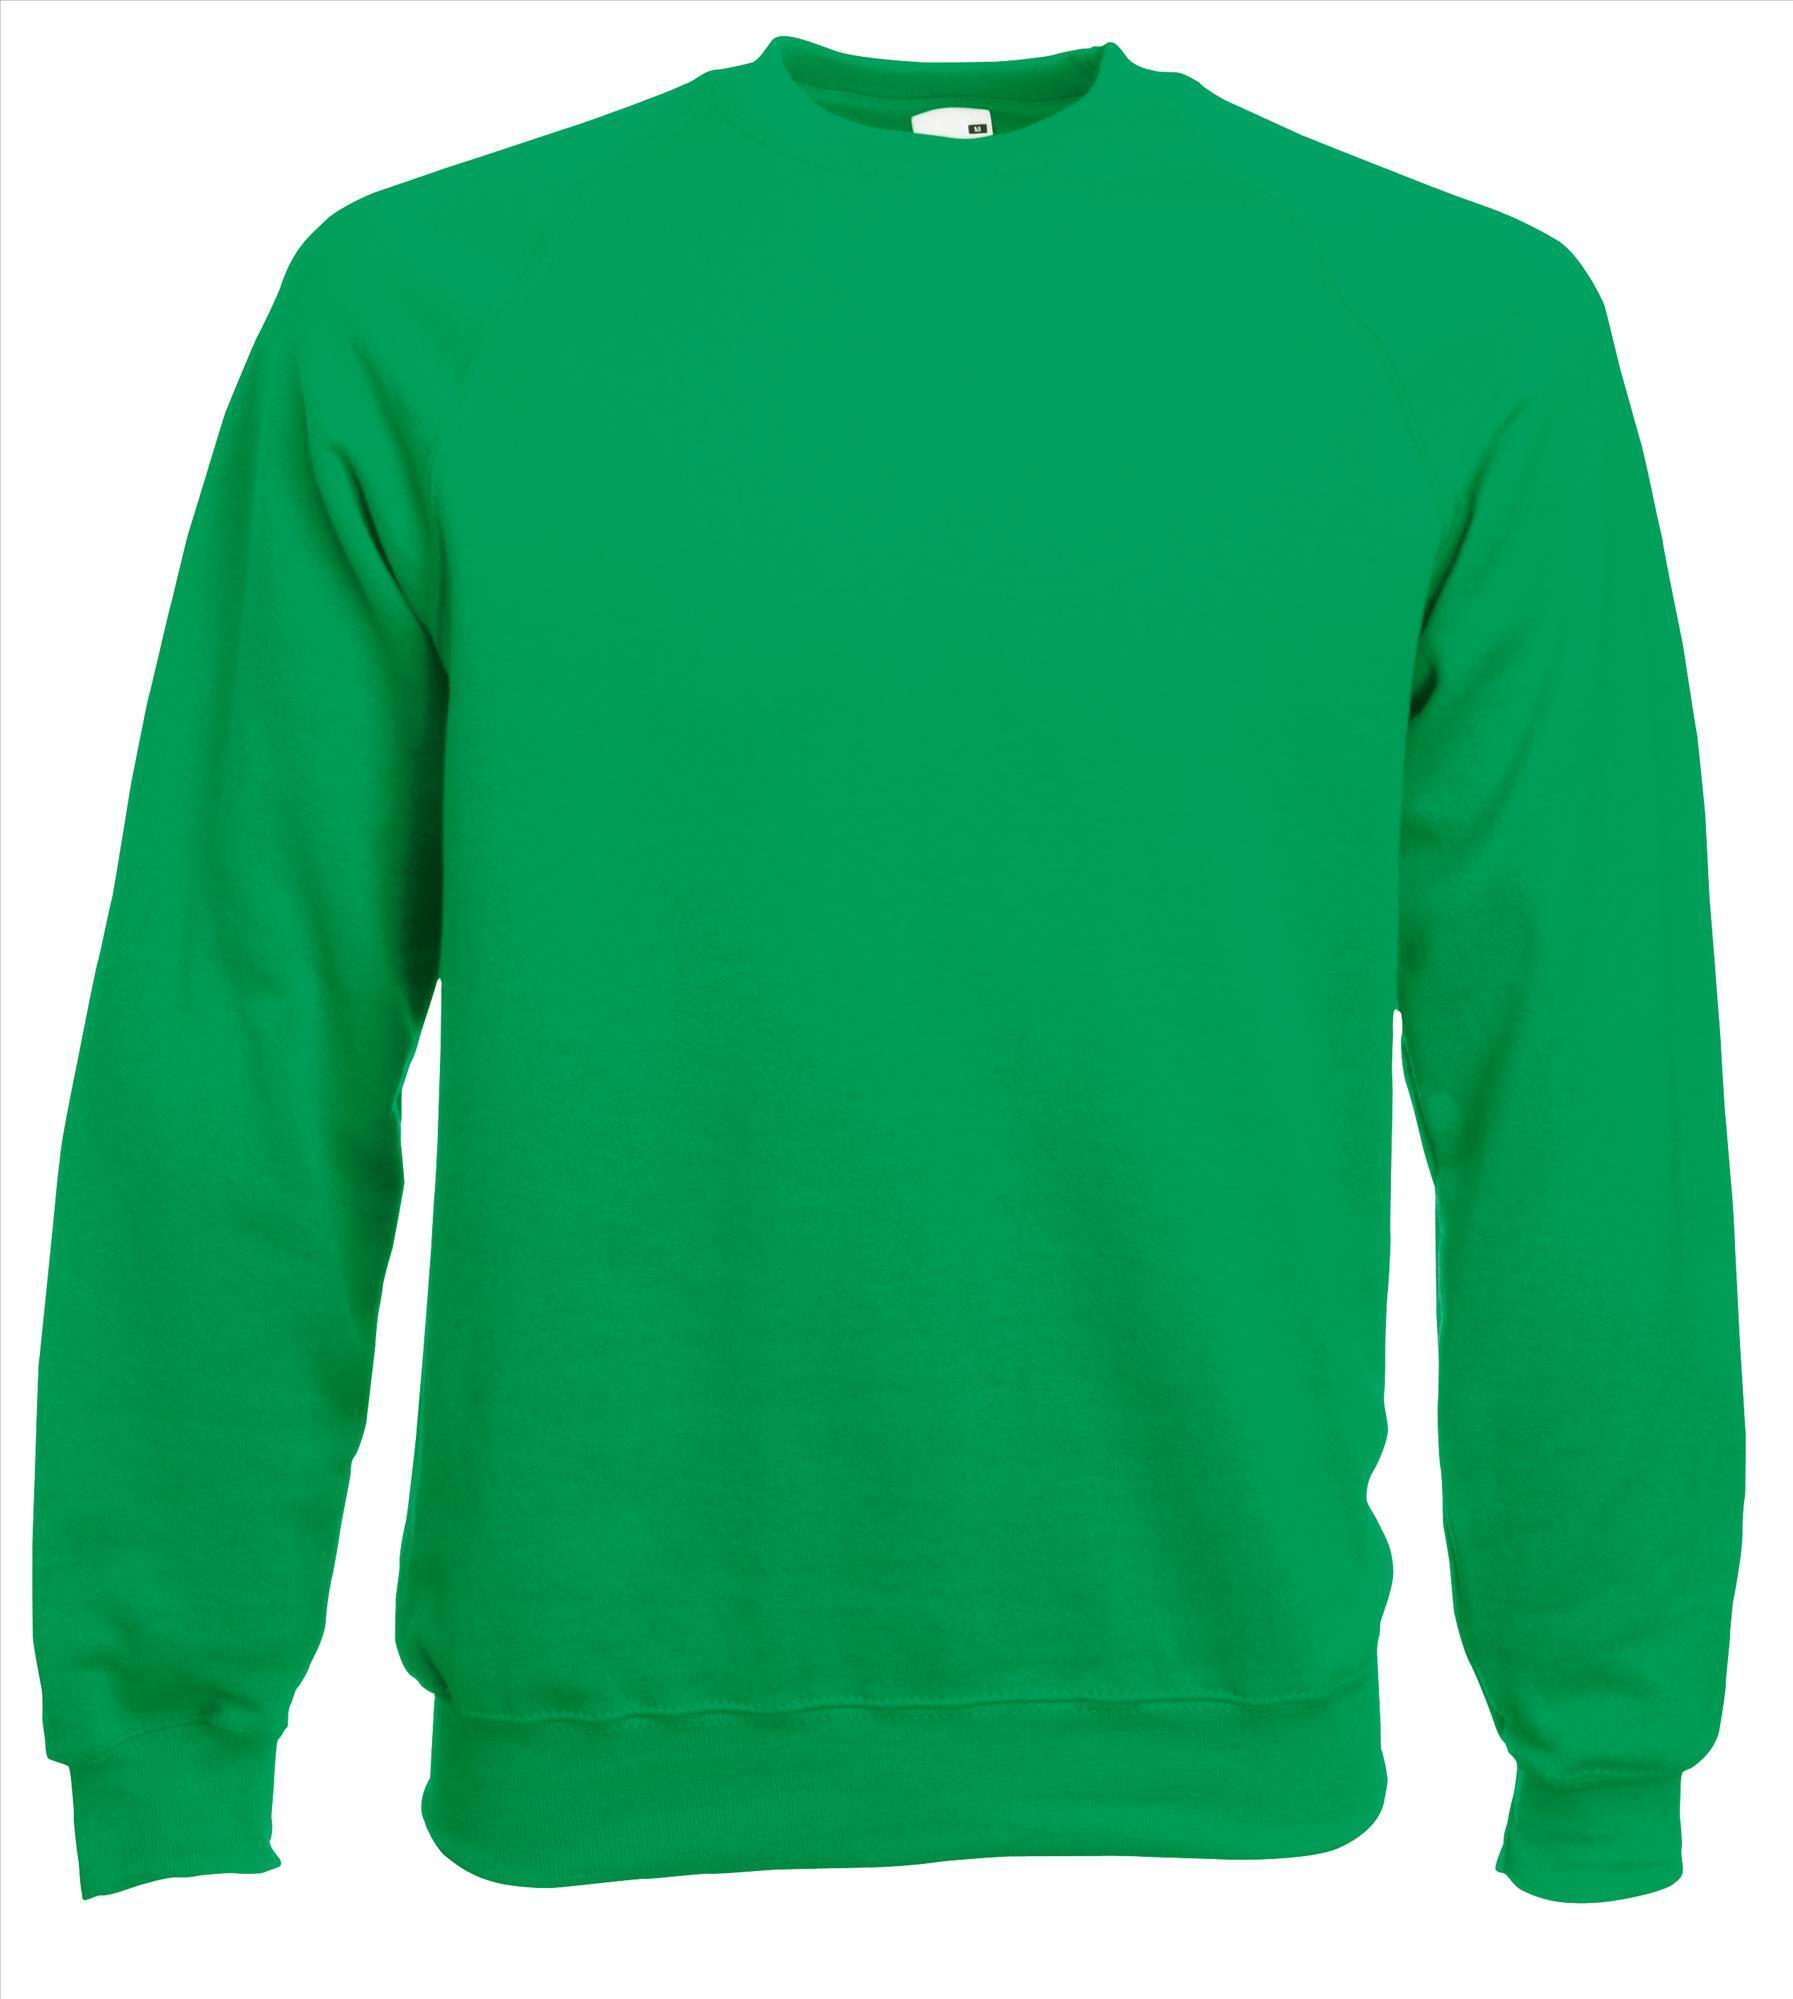 Sweater kermitgroen voor mannen bedrukbaar te personaliseren sweatshirts